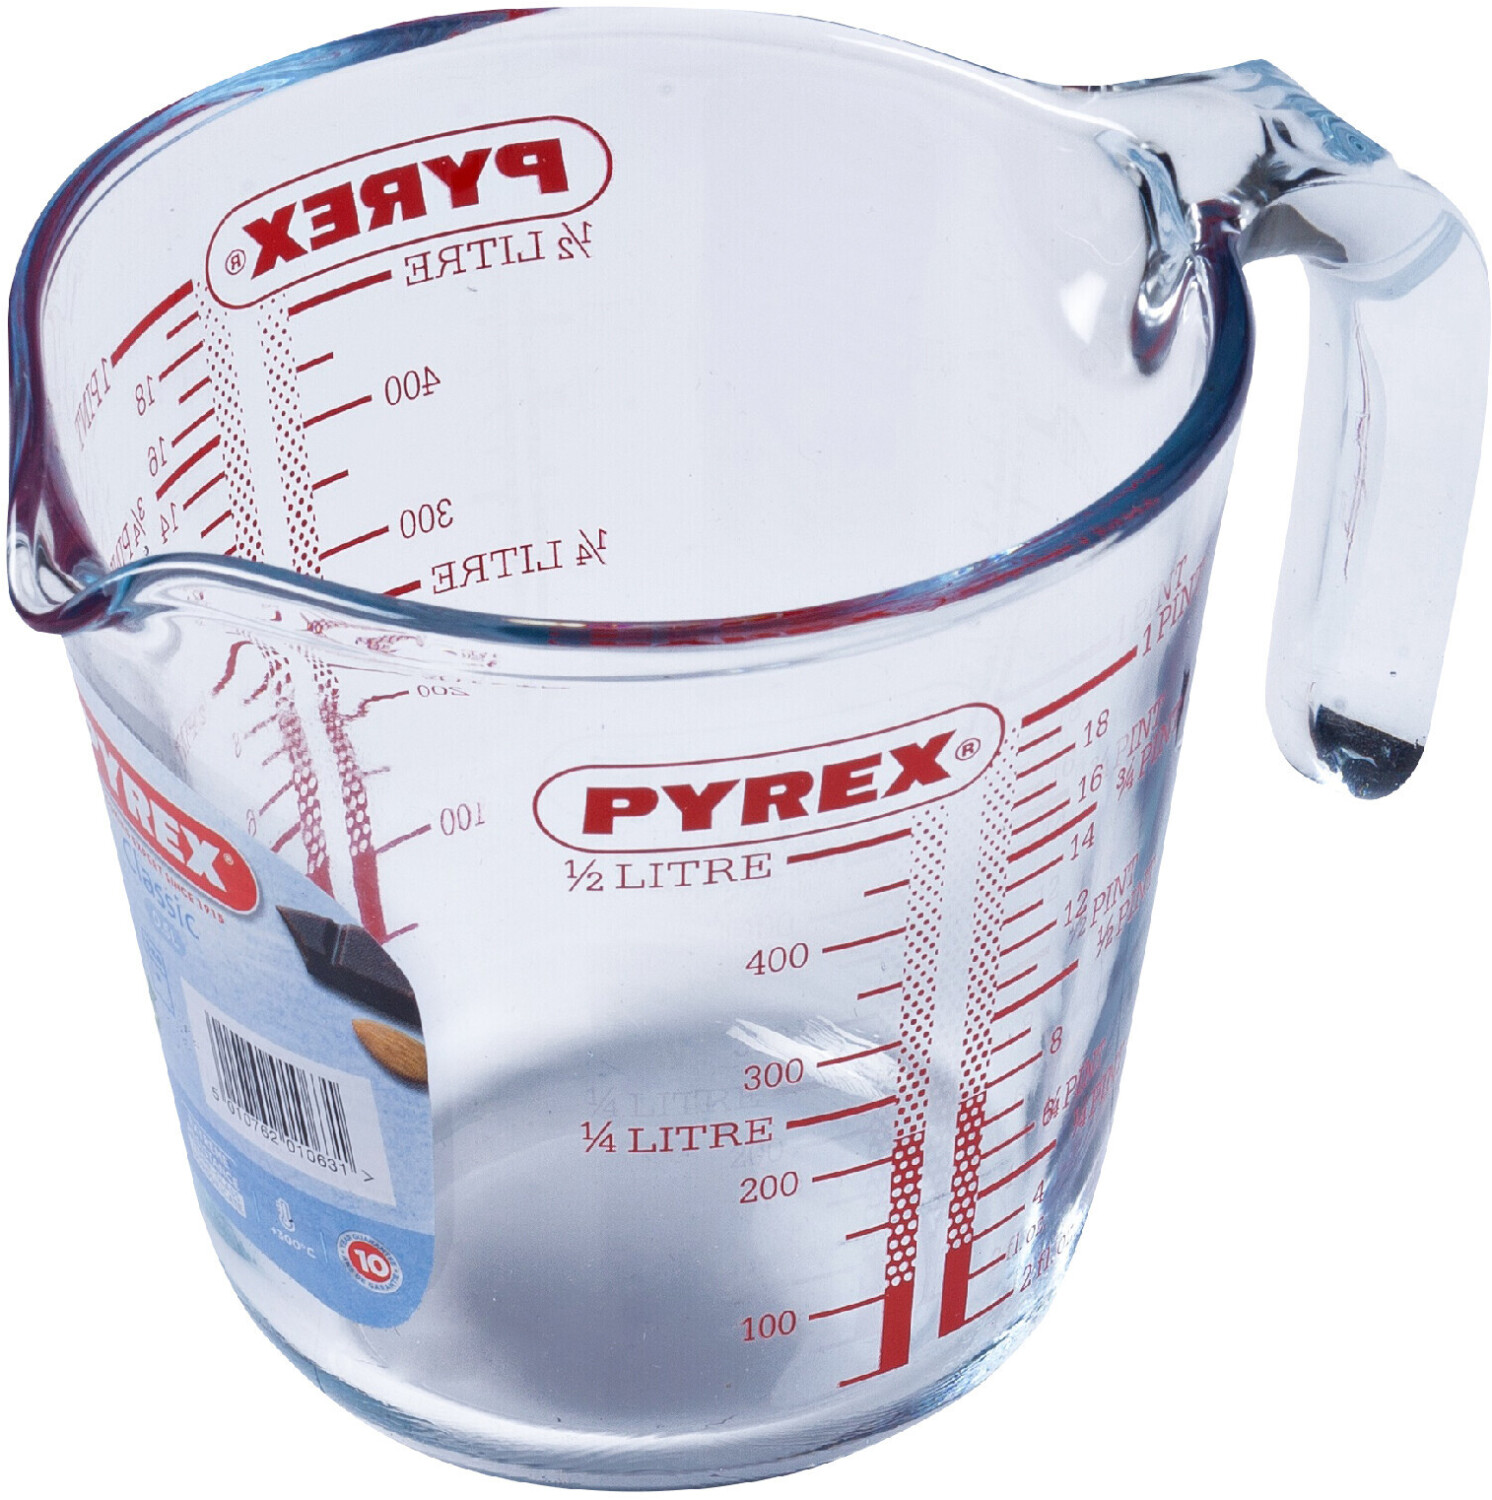 Pichet mesureur - Pyrex 500 ml